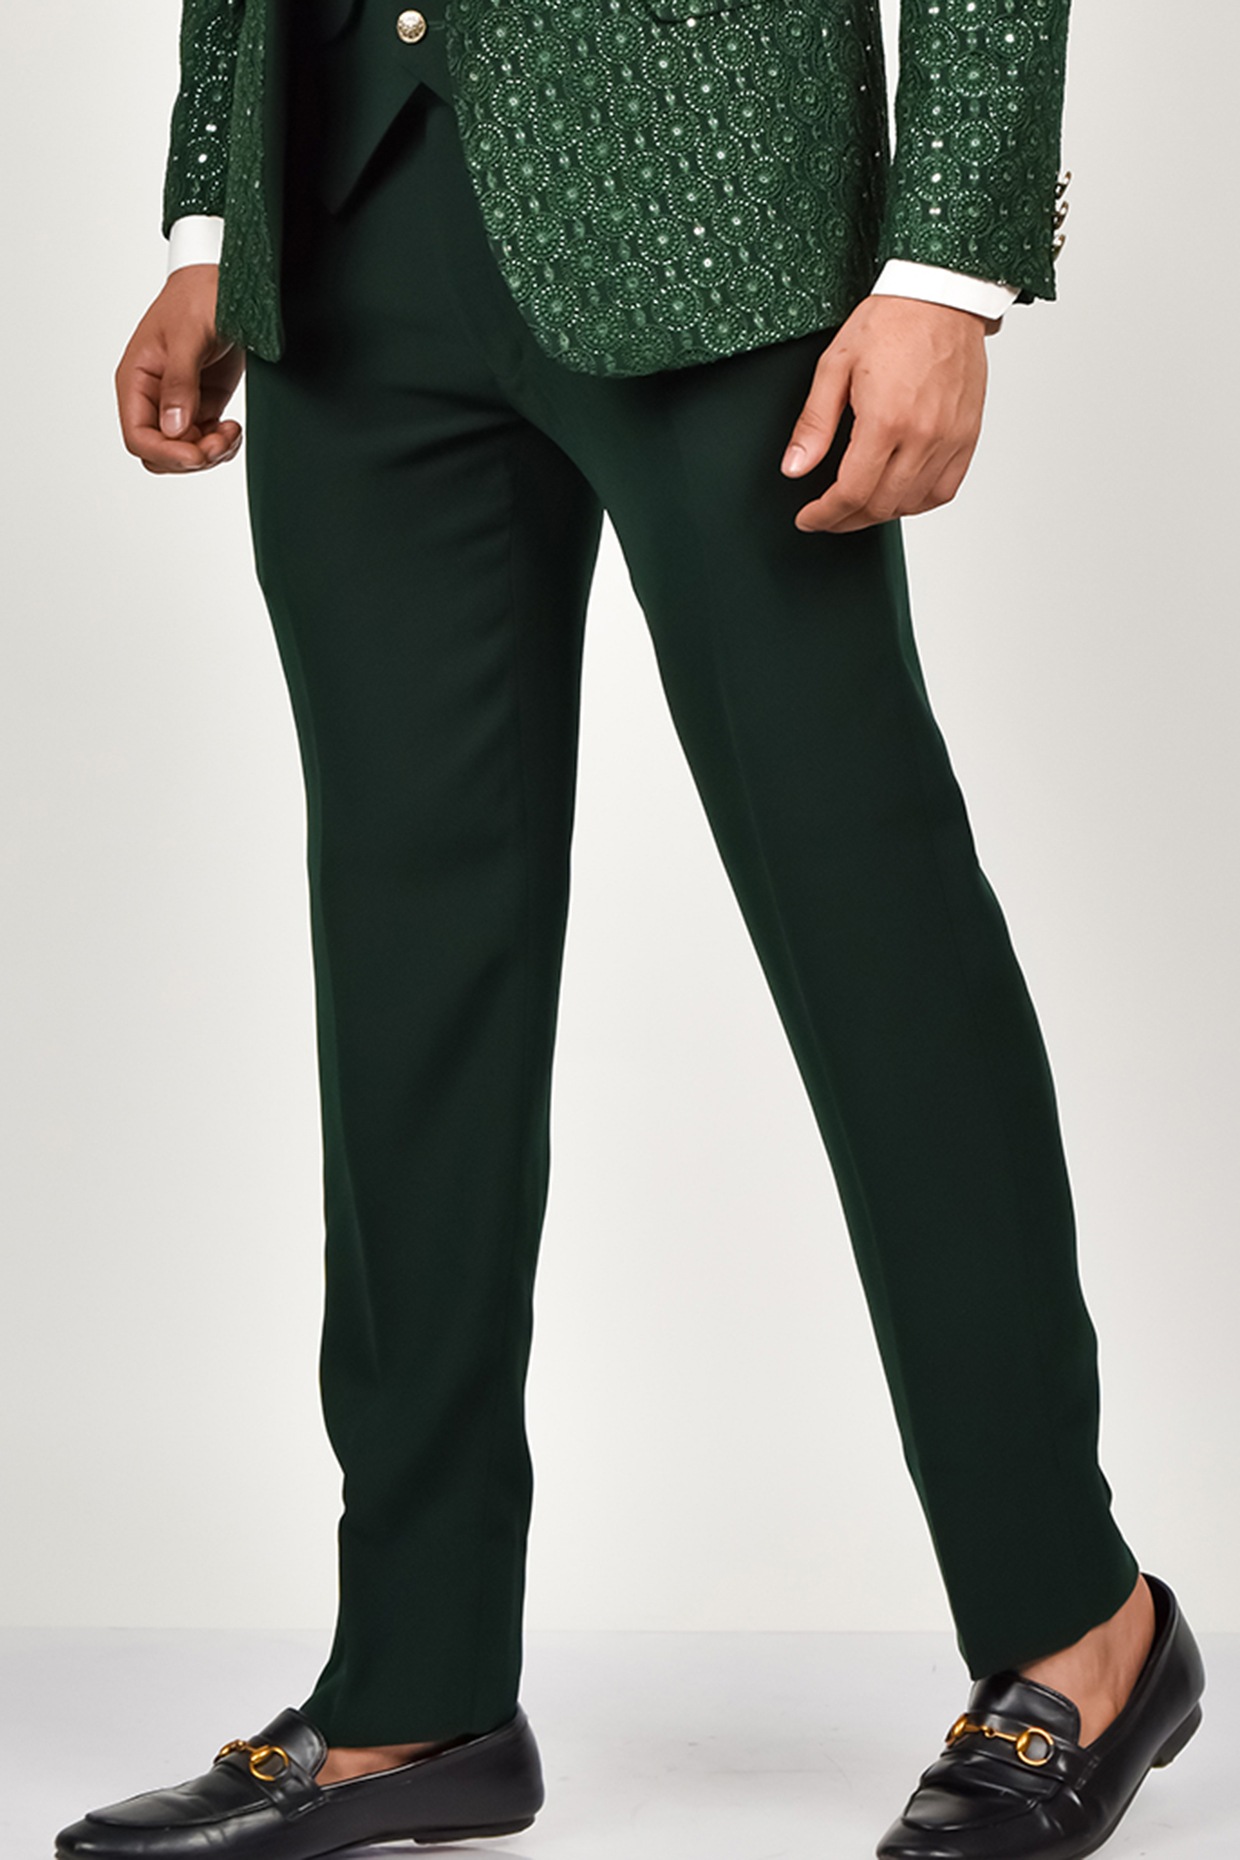 Men's 3 Piece Olive Green Suit Slim Fit Suit Wedding Suit Sainly– SAINLY